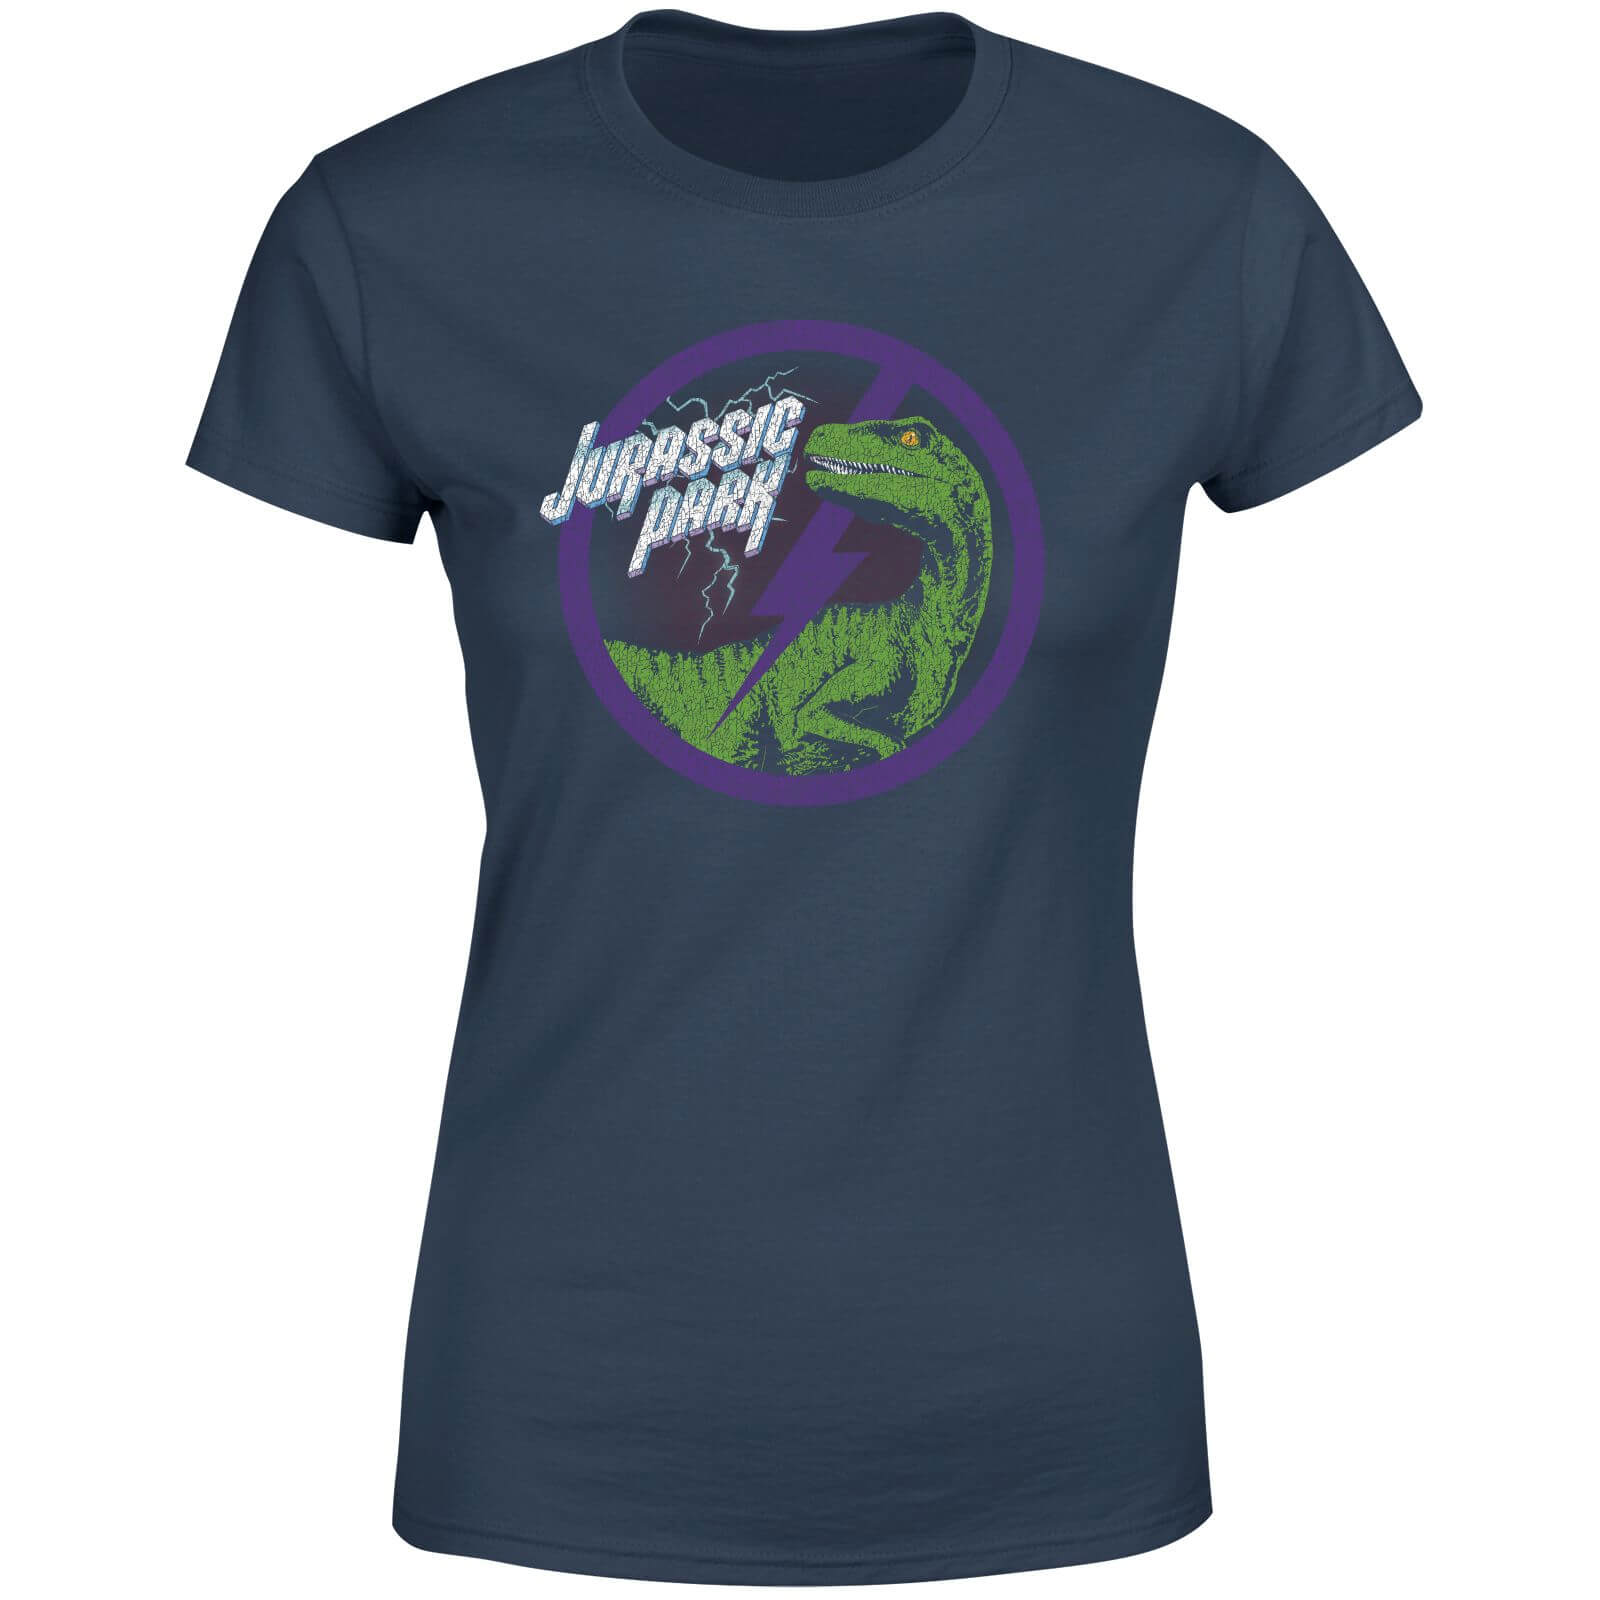  jurassic park raptor bolt womens t-shirt